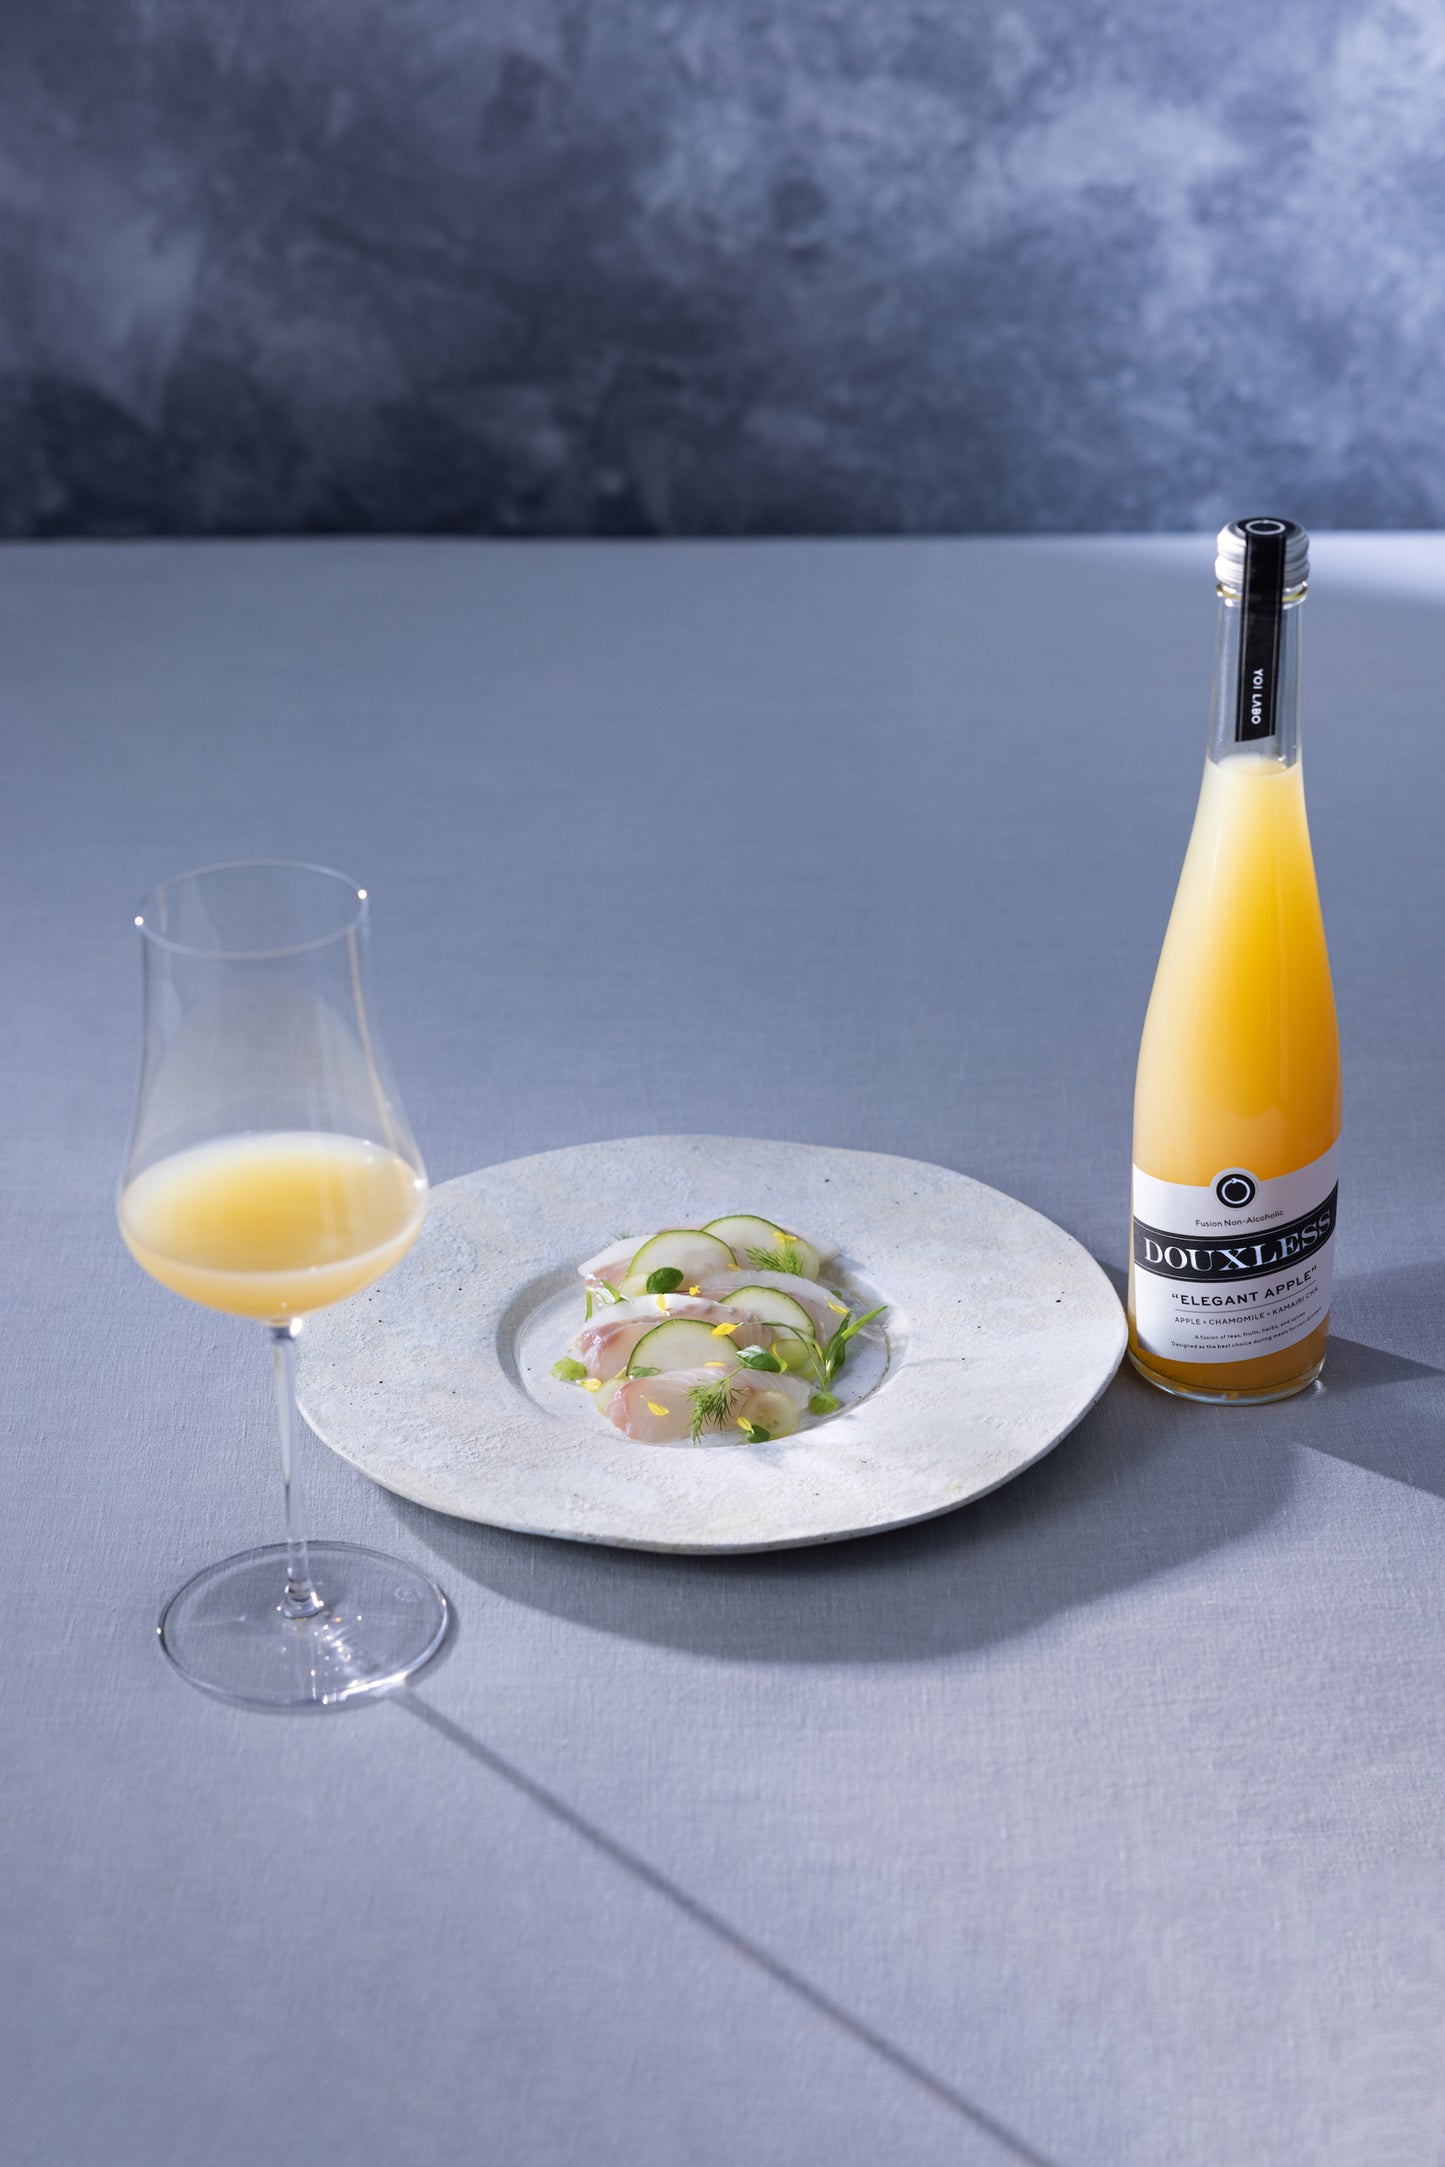 Fusion Non-Alcoholic（フュージョンノンアルコール）のDOUXLESS ELEGANT APPLE（ドゥレス エレガントアップル）と料理とグラス